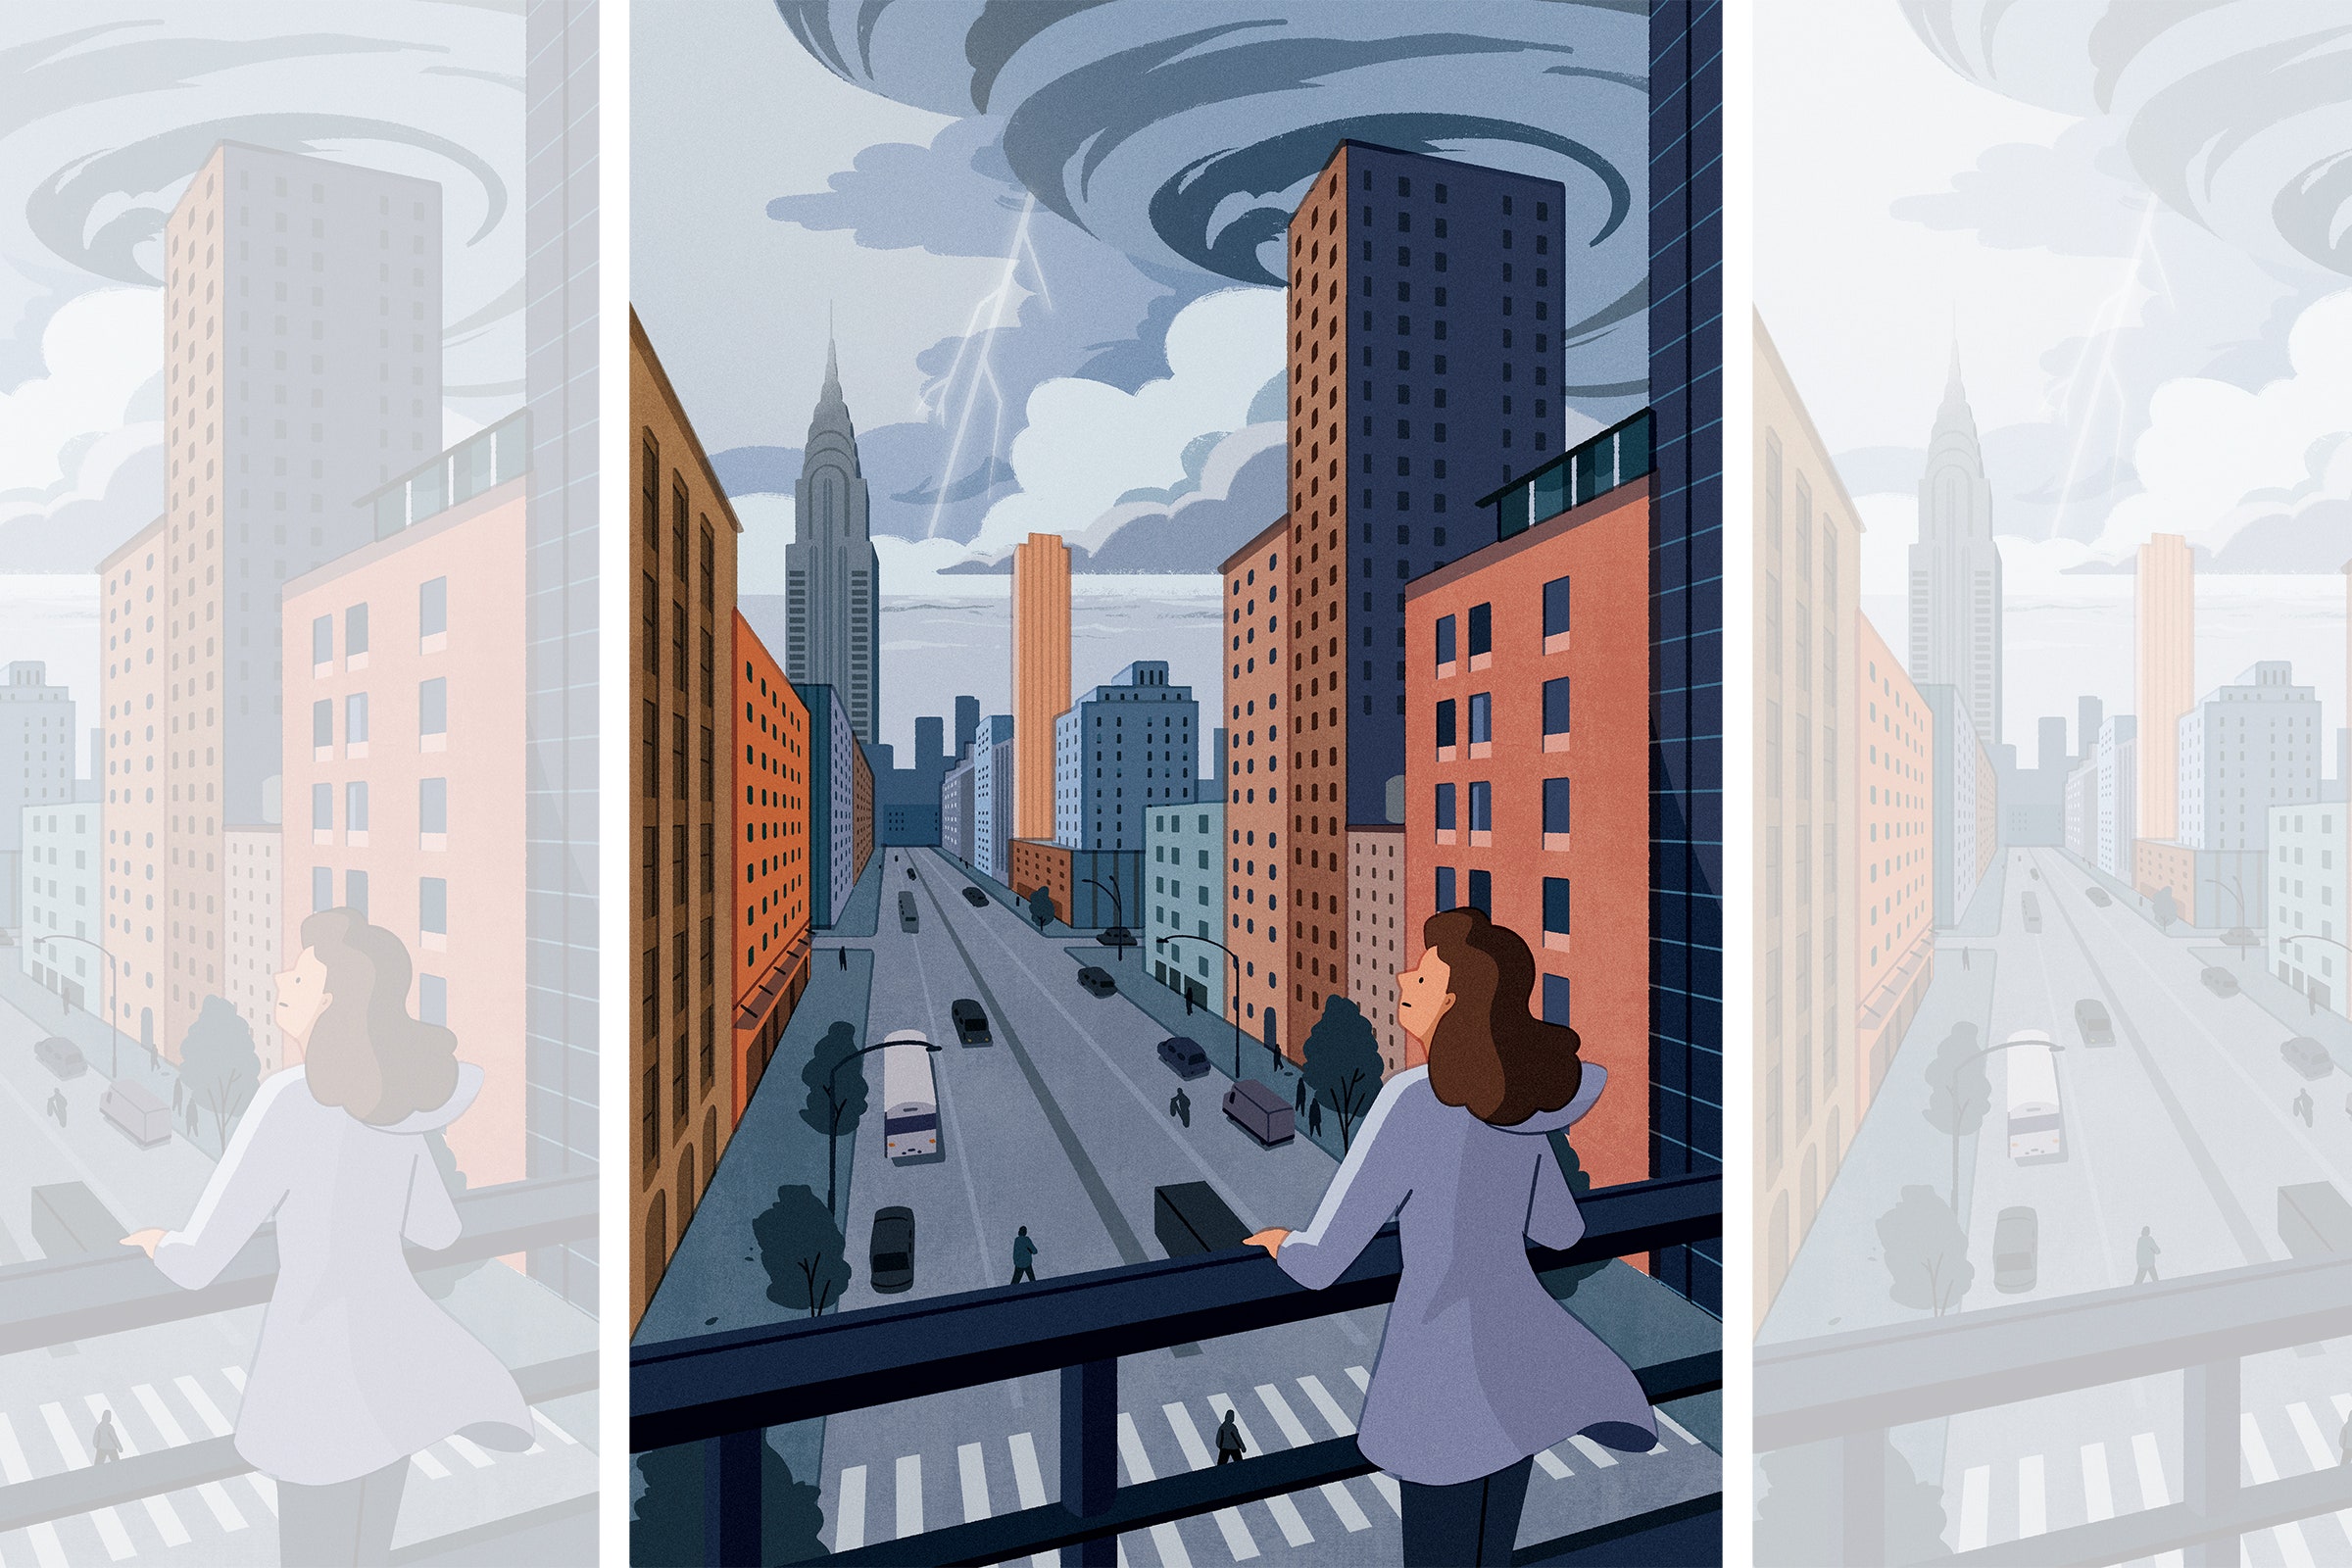 Uma ilustração com a imagem de uma mulher na varanda no ambiente urbano, que analisa o aquecimento global e uma tempestade.